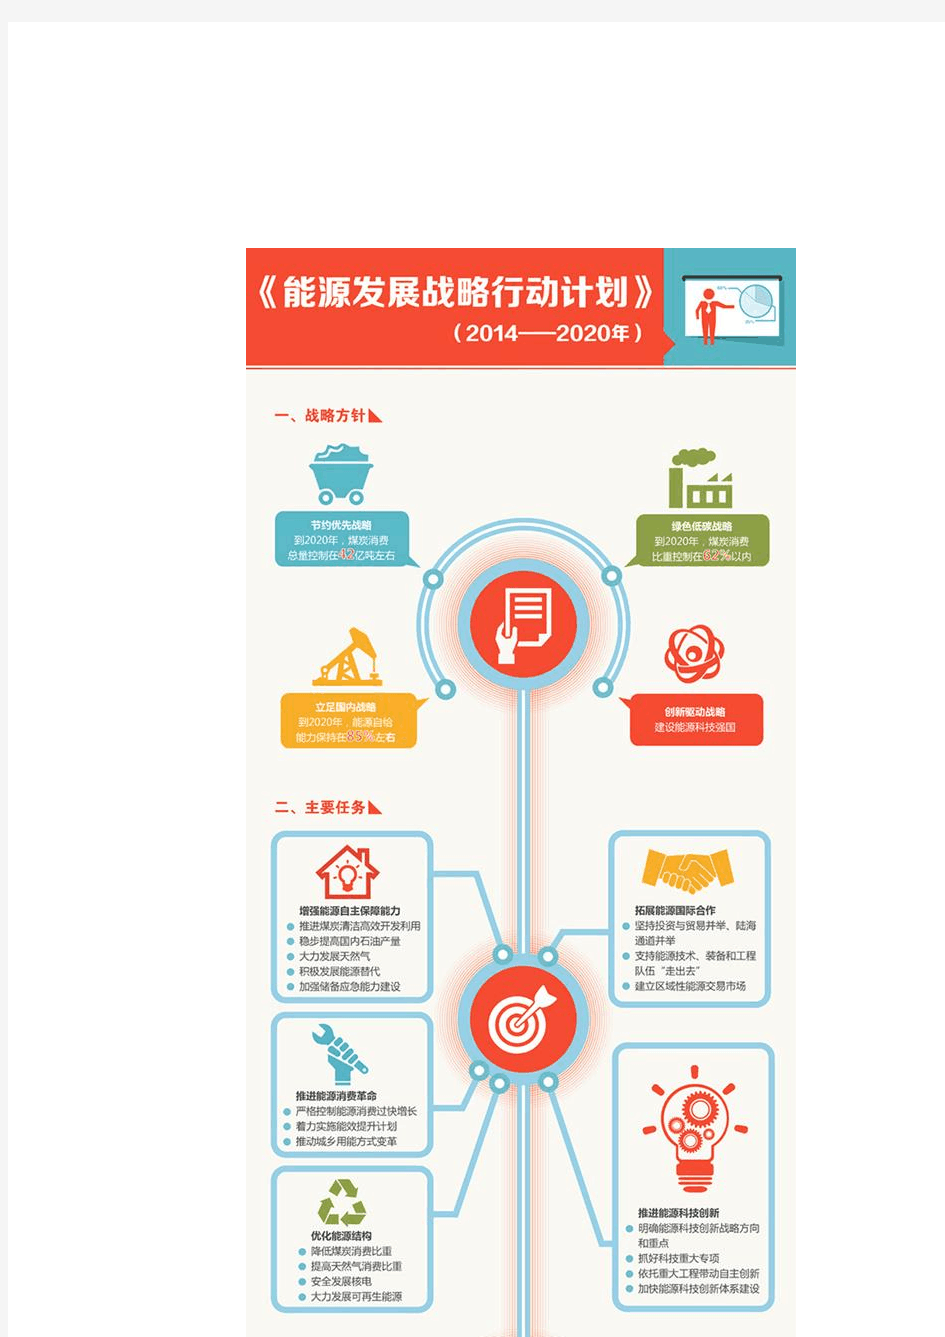 一张图读懂中国能源四大战略方针